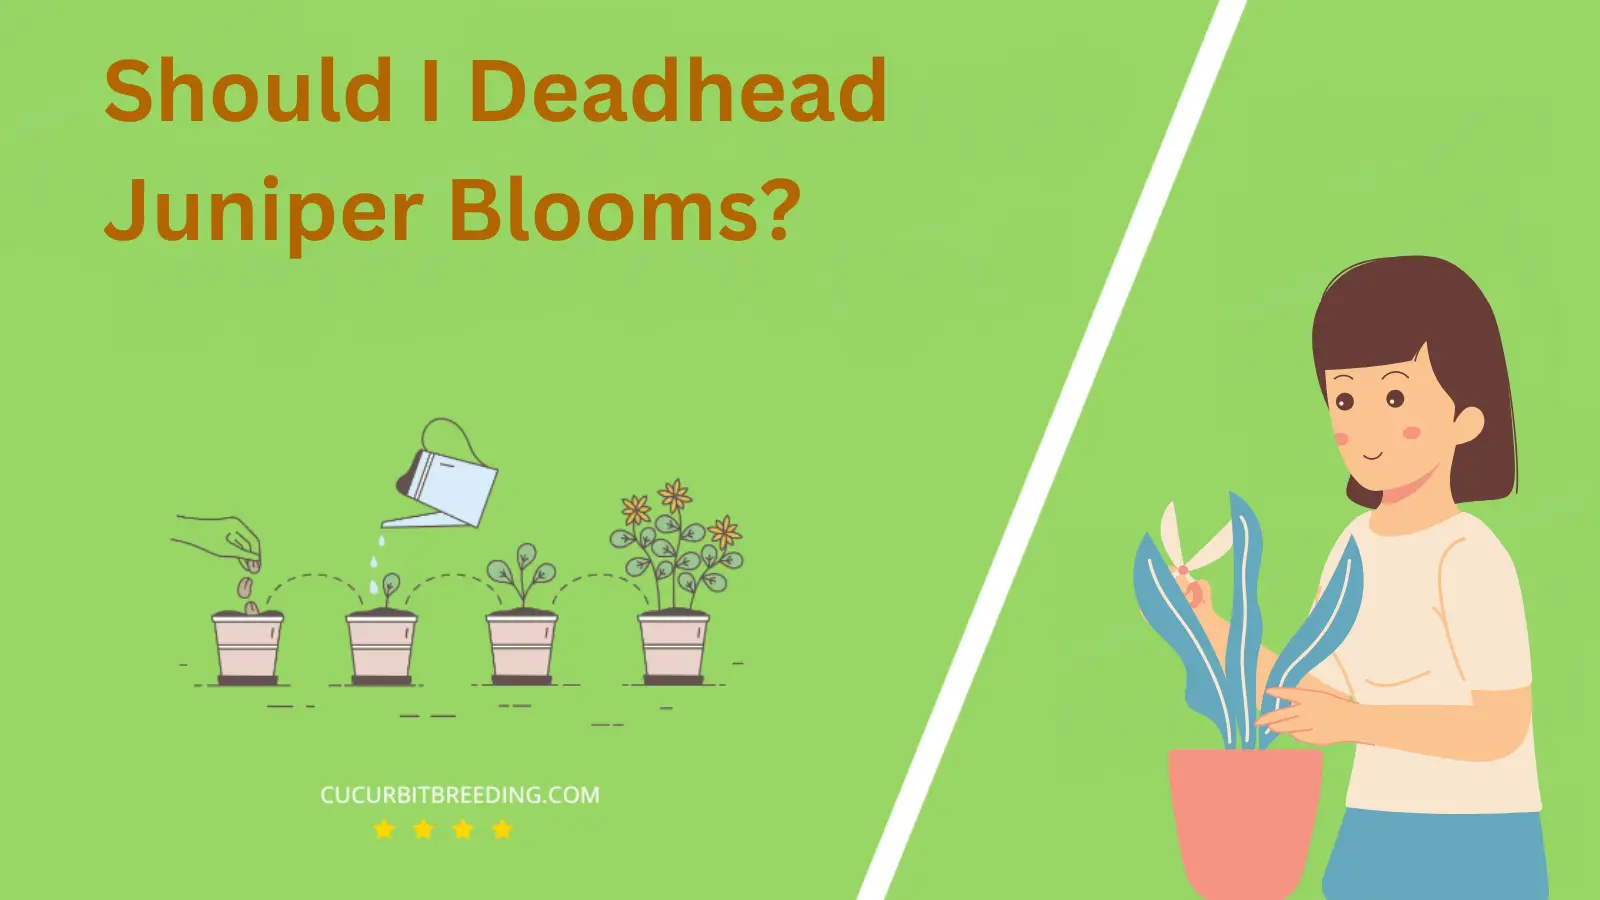 Should I Deadhead Juniper Blooms?